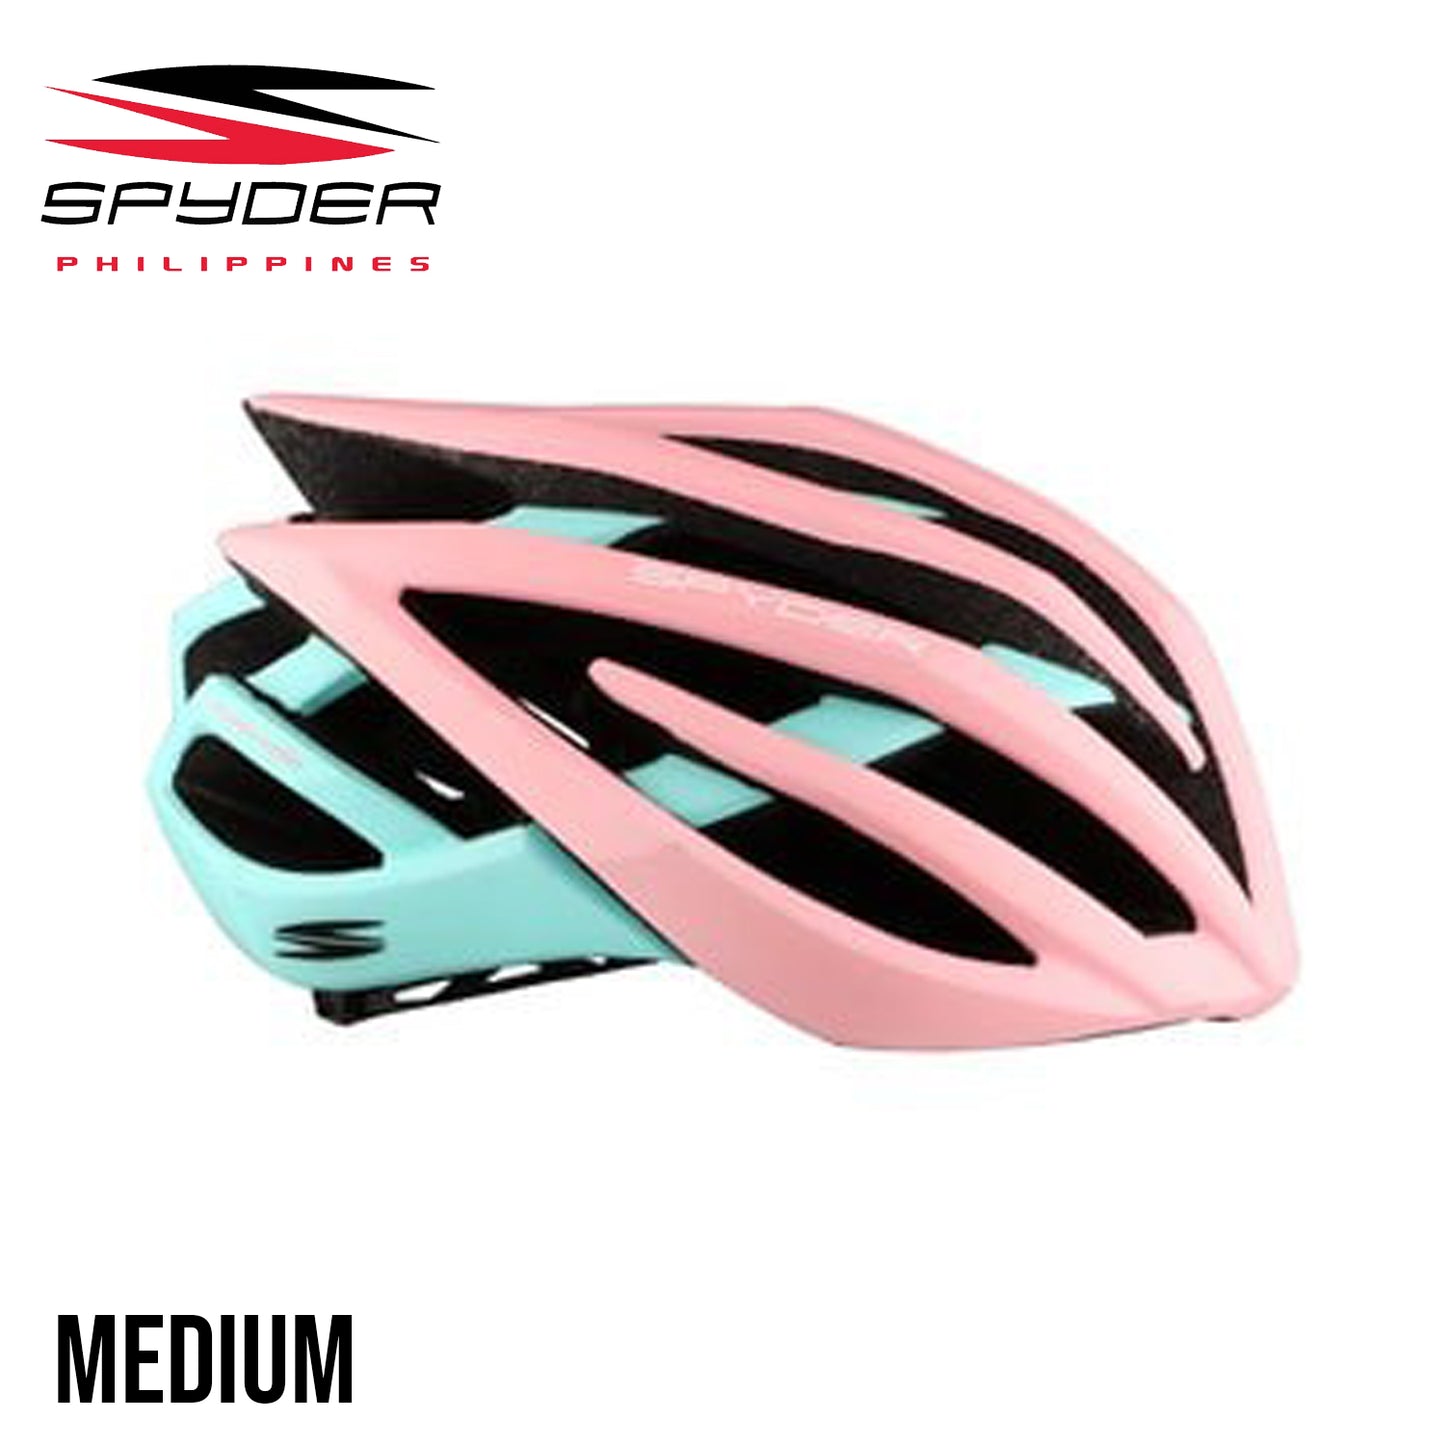 Spyder PHANTOM Bike Helmet for Road - Pink/Turquoise